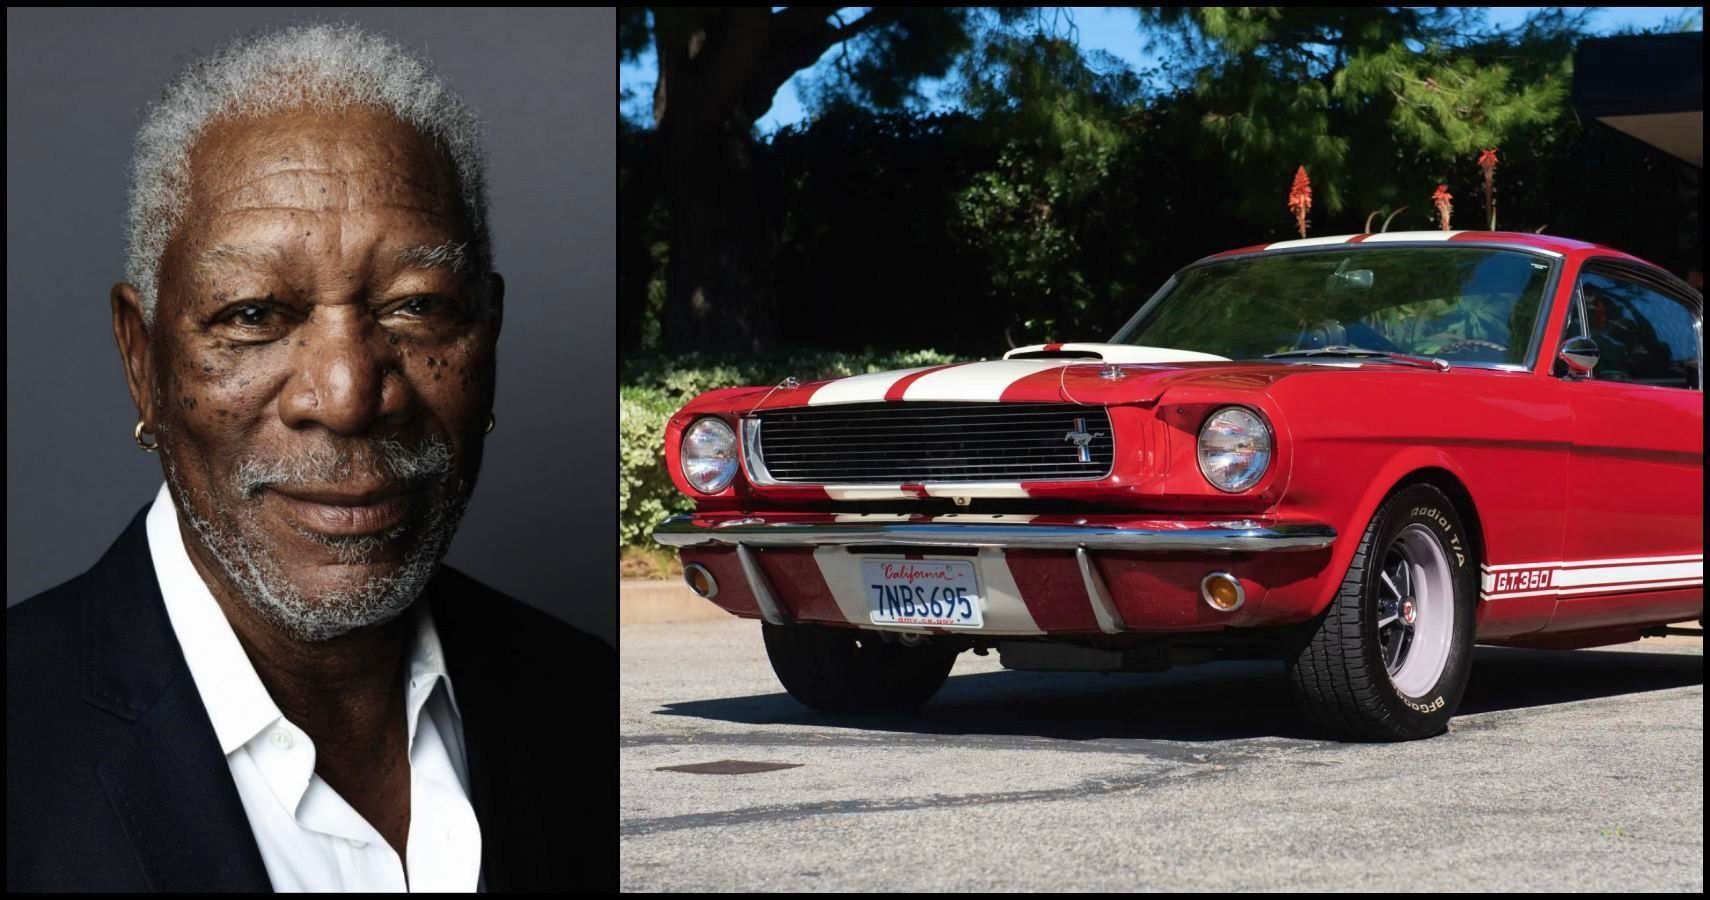 La collection privée de voitures de l'acteur Morgan Freeman vaudrait plusieurs $$$$$$ 75f7e26e-885e-4259-b35b-a04a852d0850